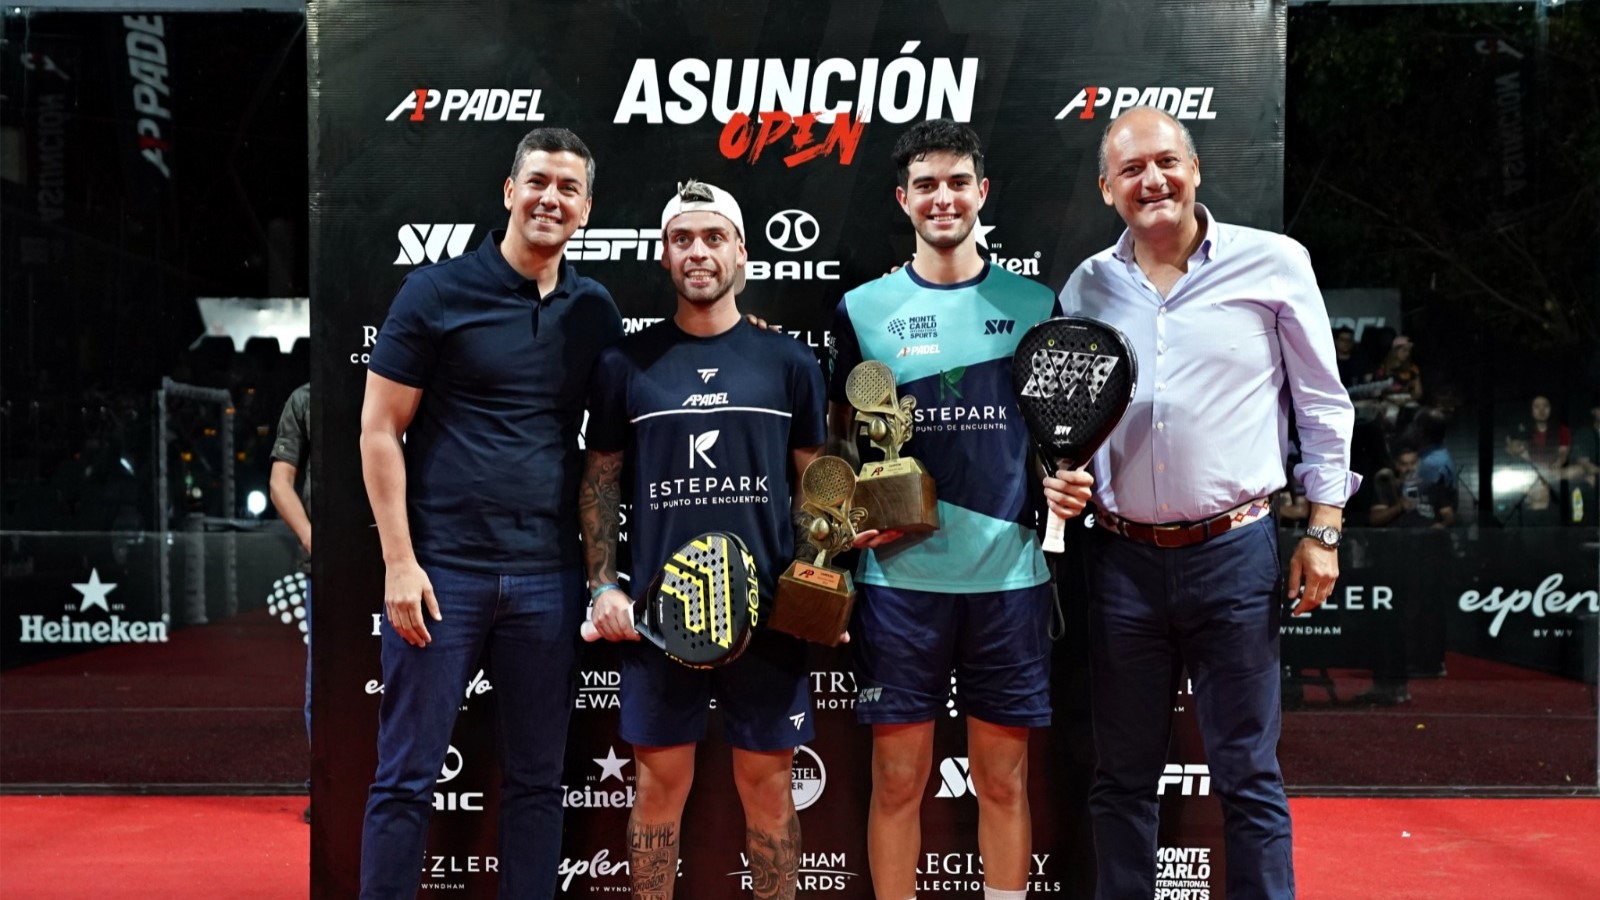 A1 Padel Asuncion Open – Le titre pour De Pascual/Alfonso !